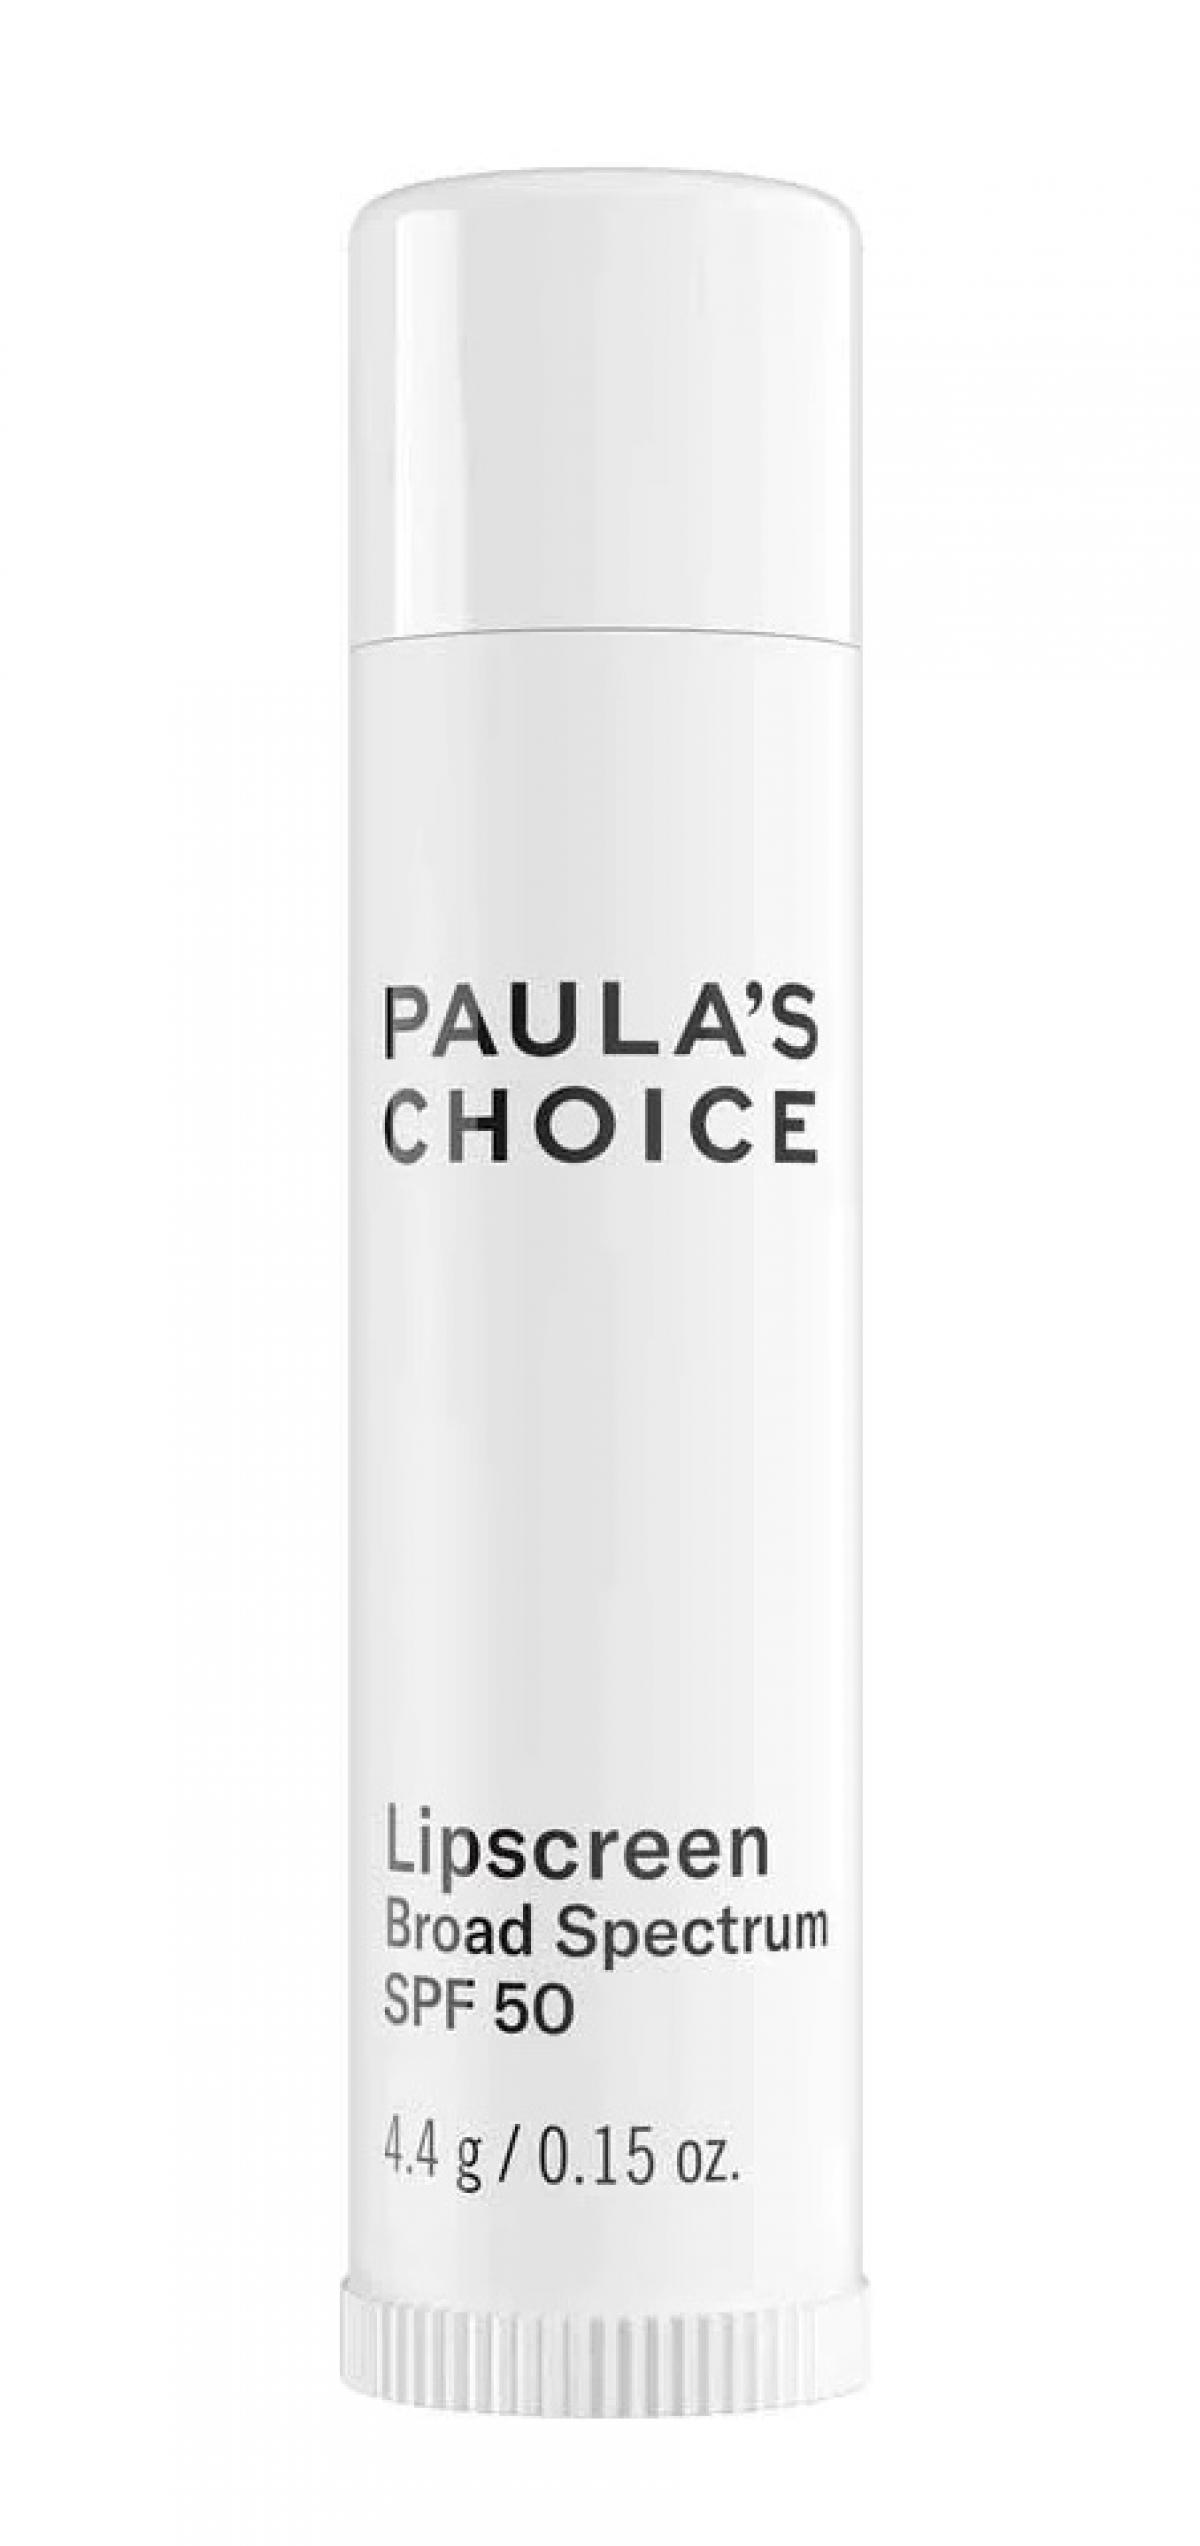 Baume à lèvres avec SPF 50 - Paula's choice